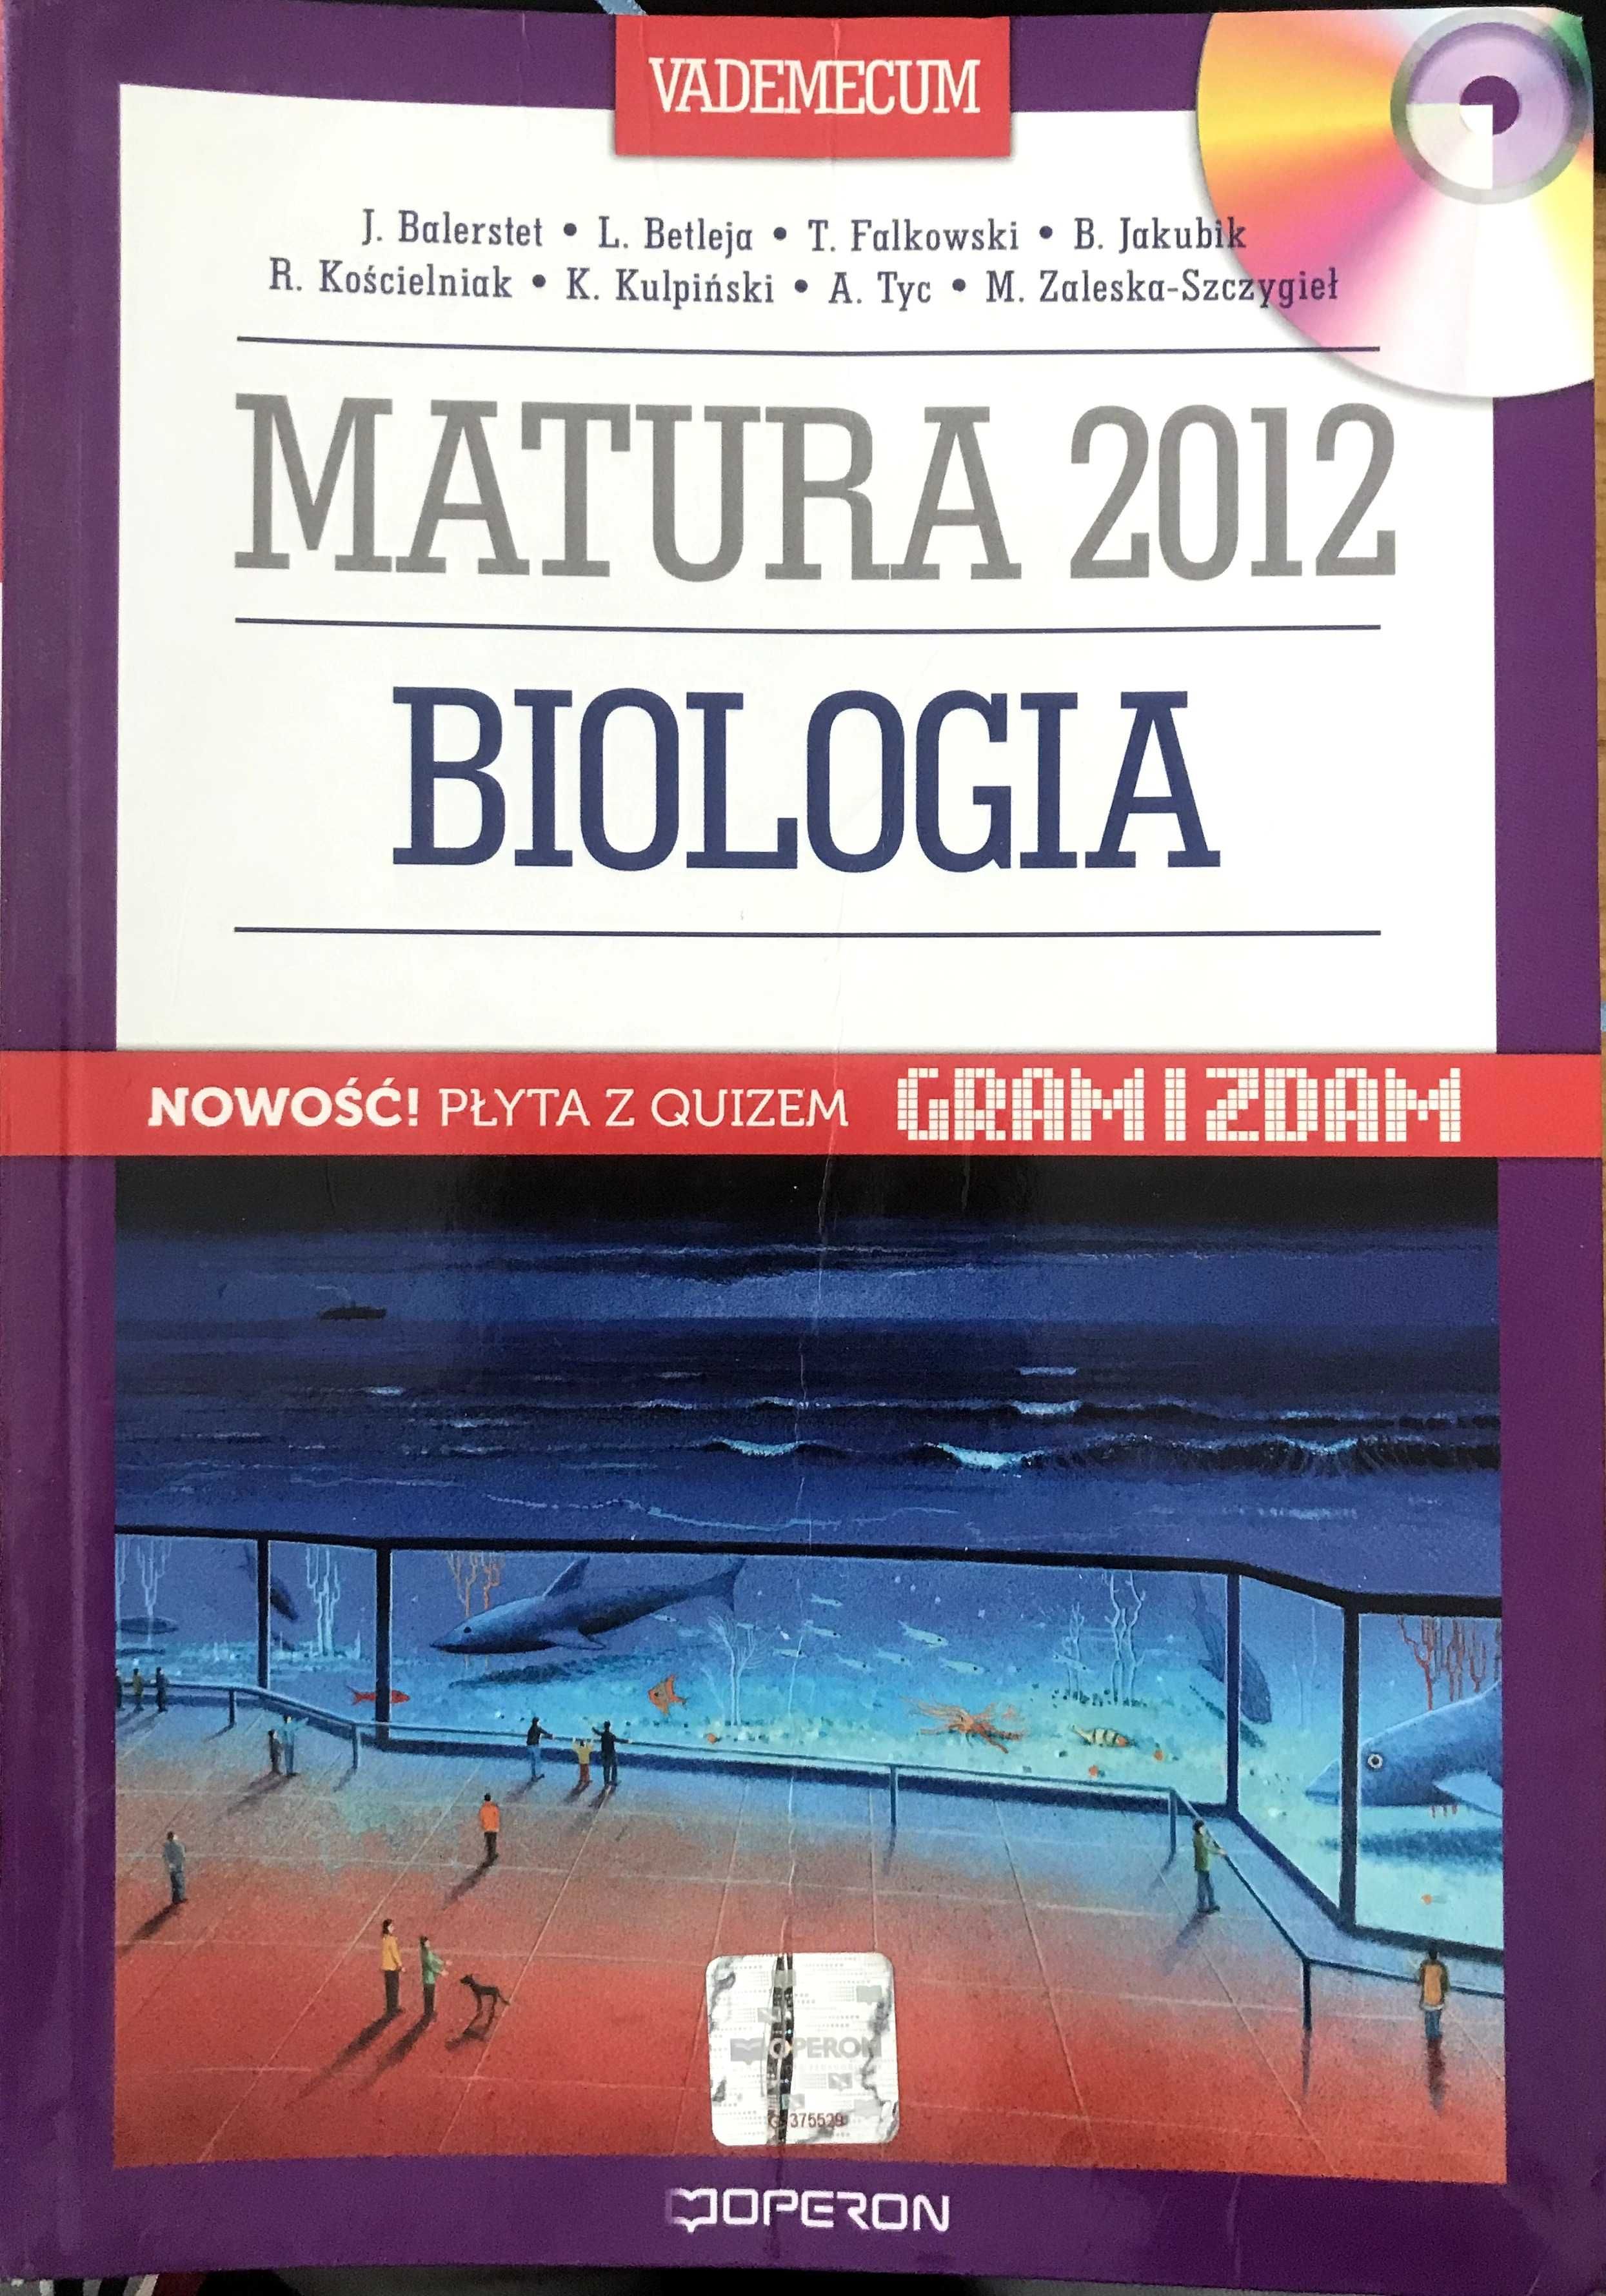 Matura 2012 Biologia Vademecum